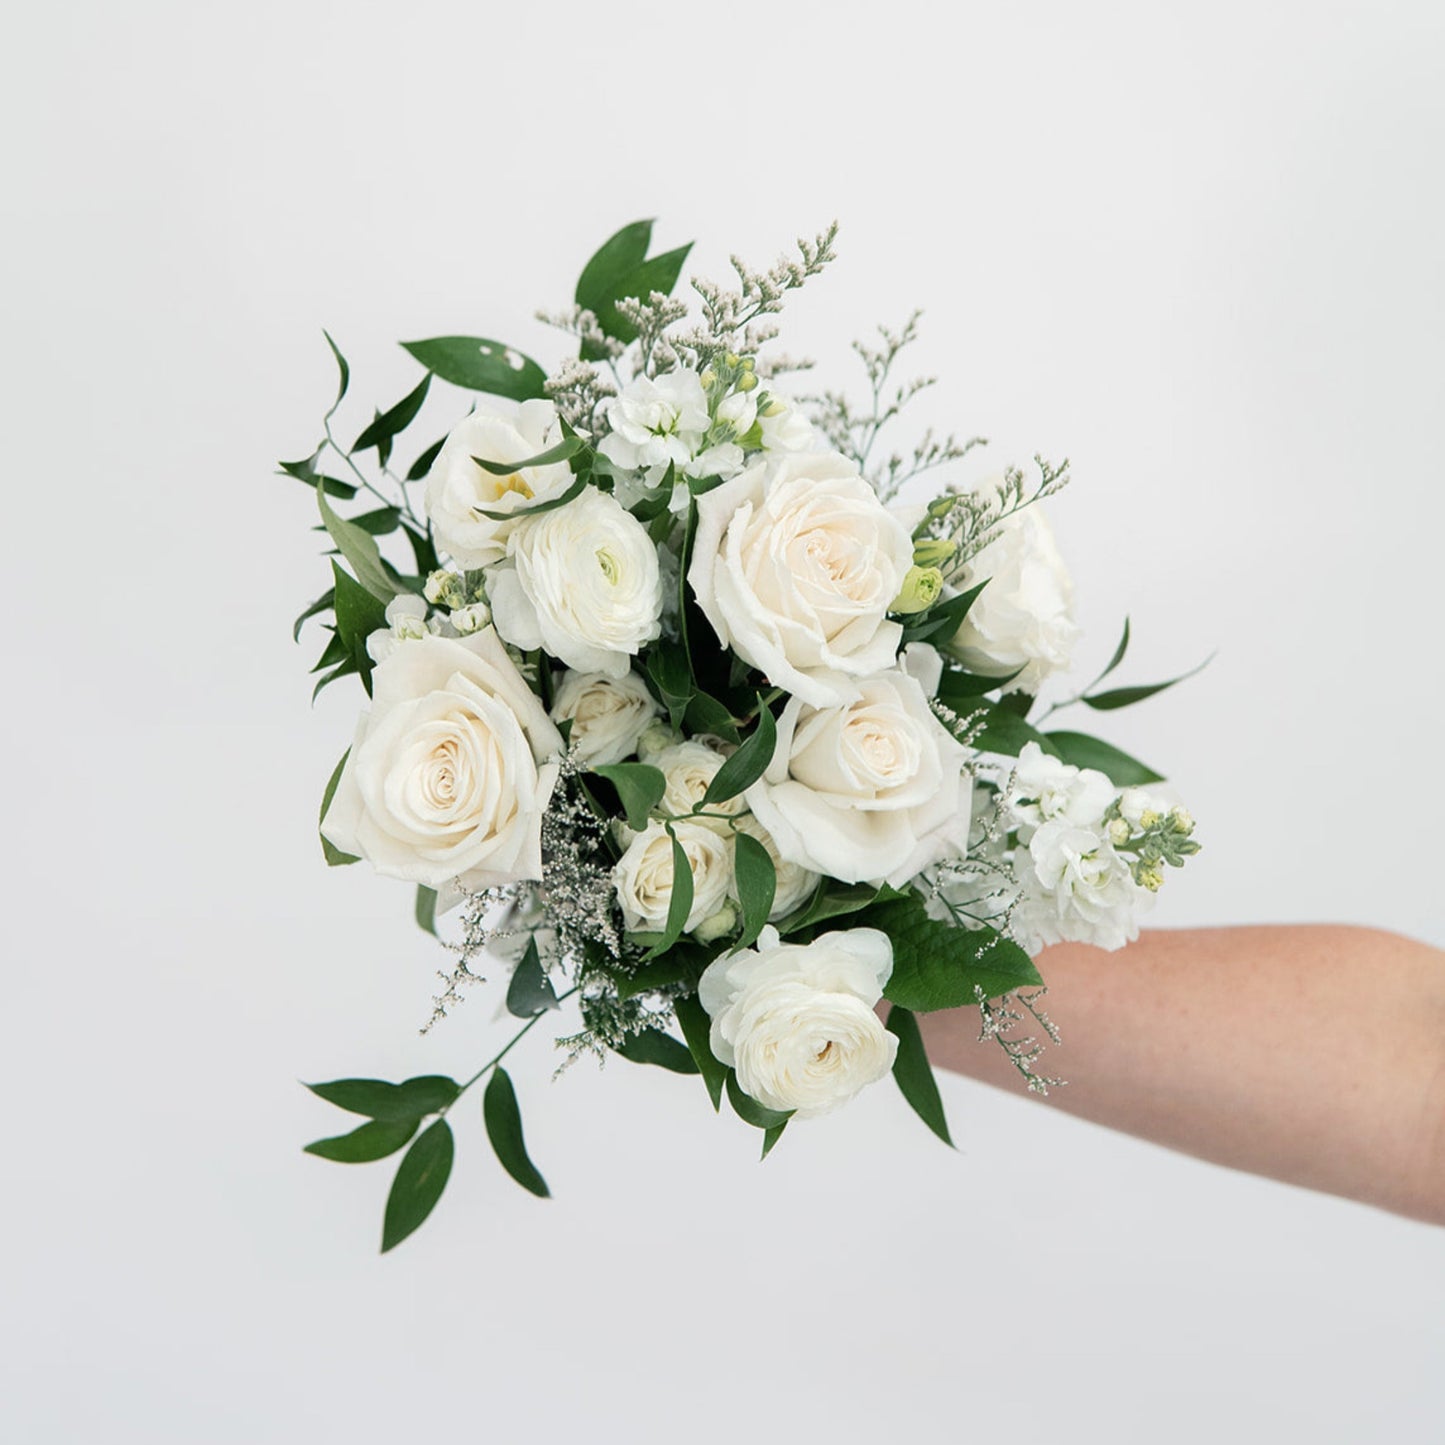 The Sophia Classic Whites Bridesmaid Bouquet